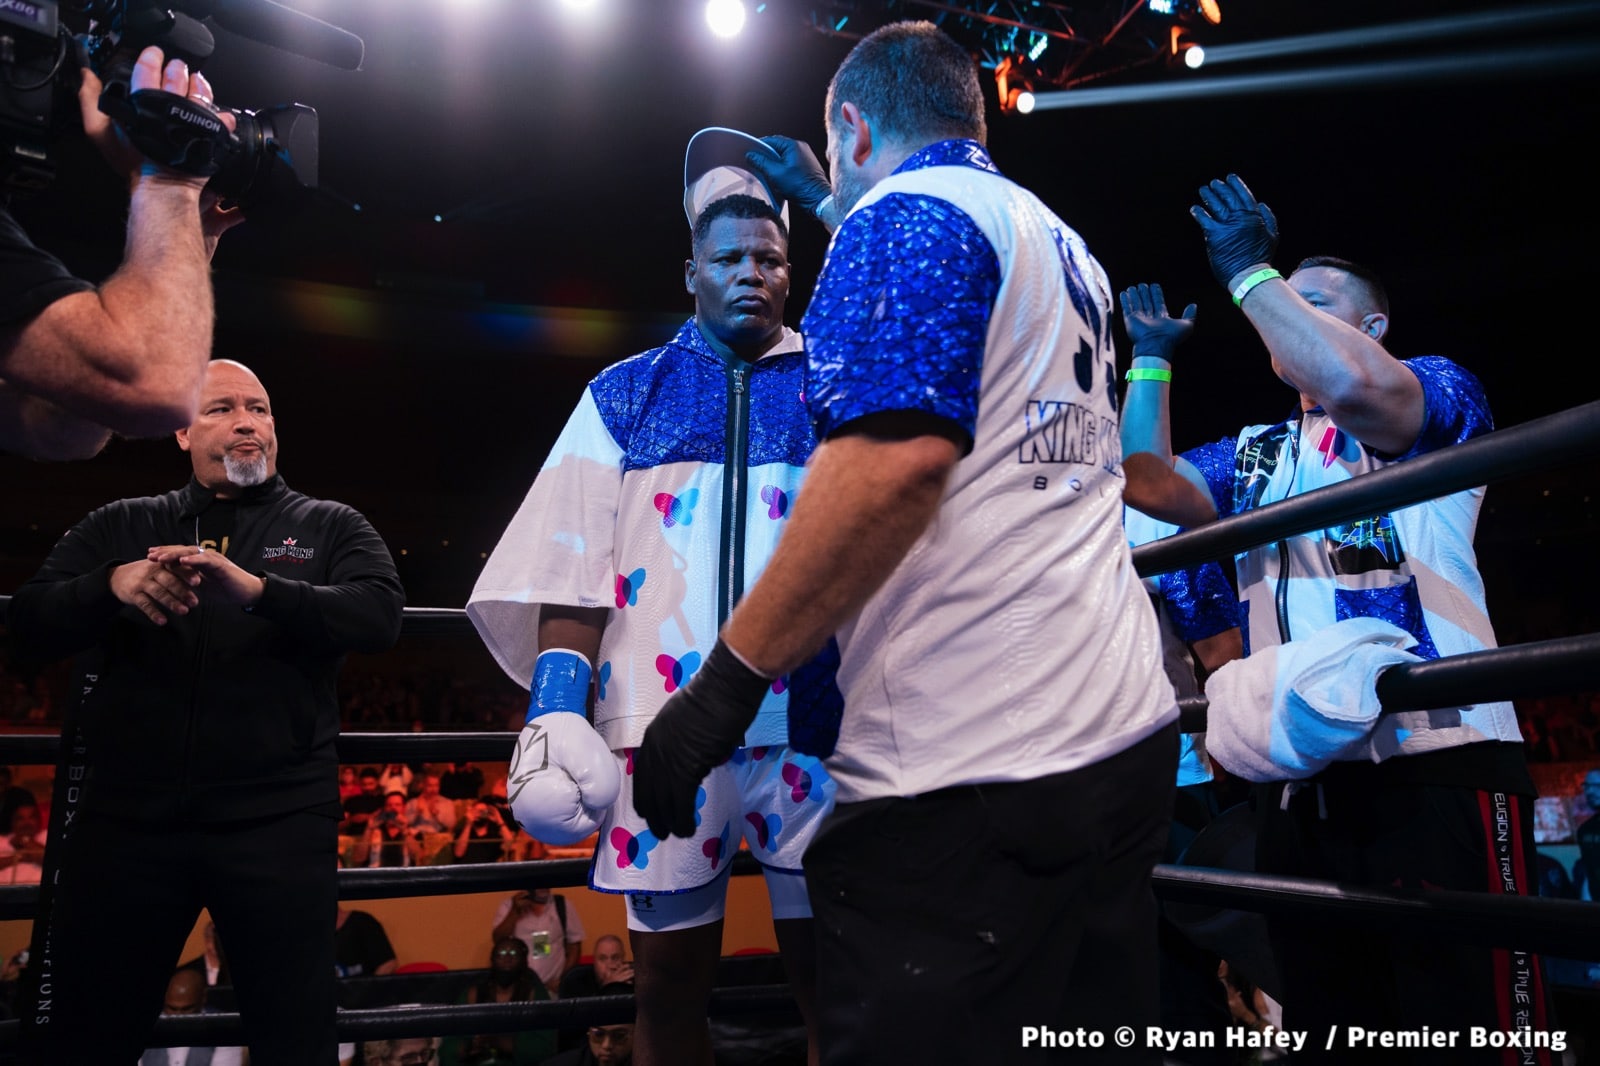 Andy Ruiz Jr boxing image / photo